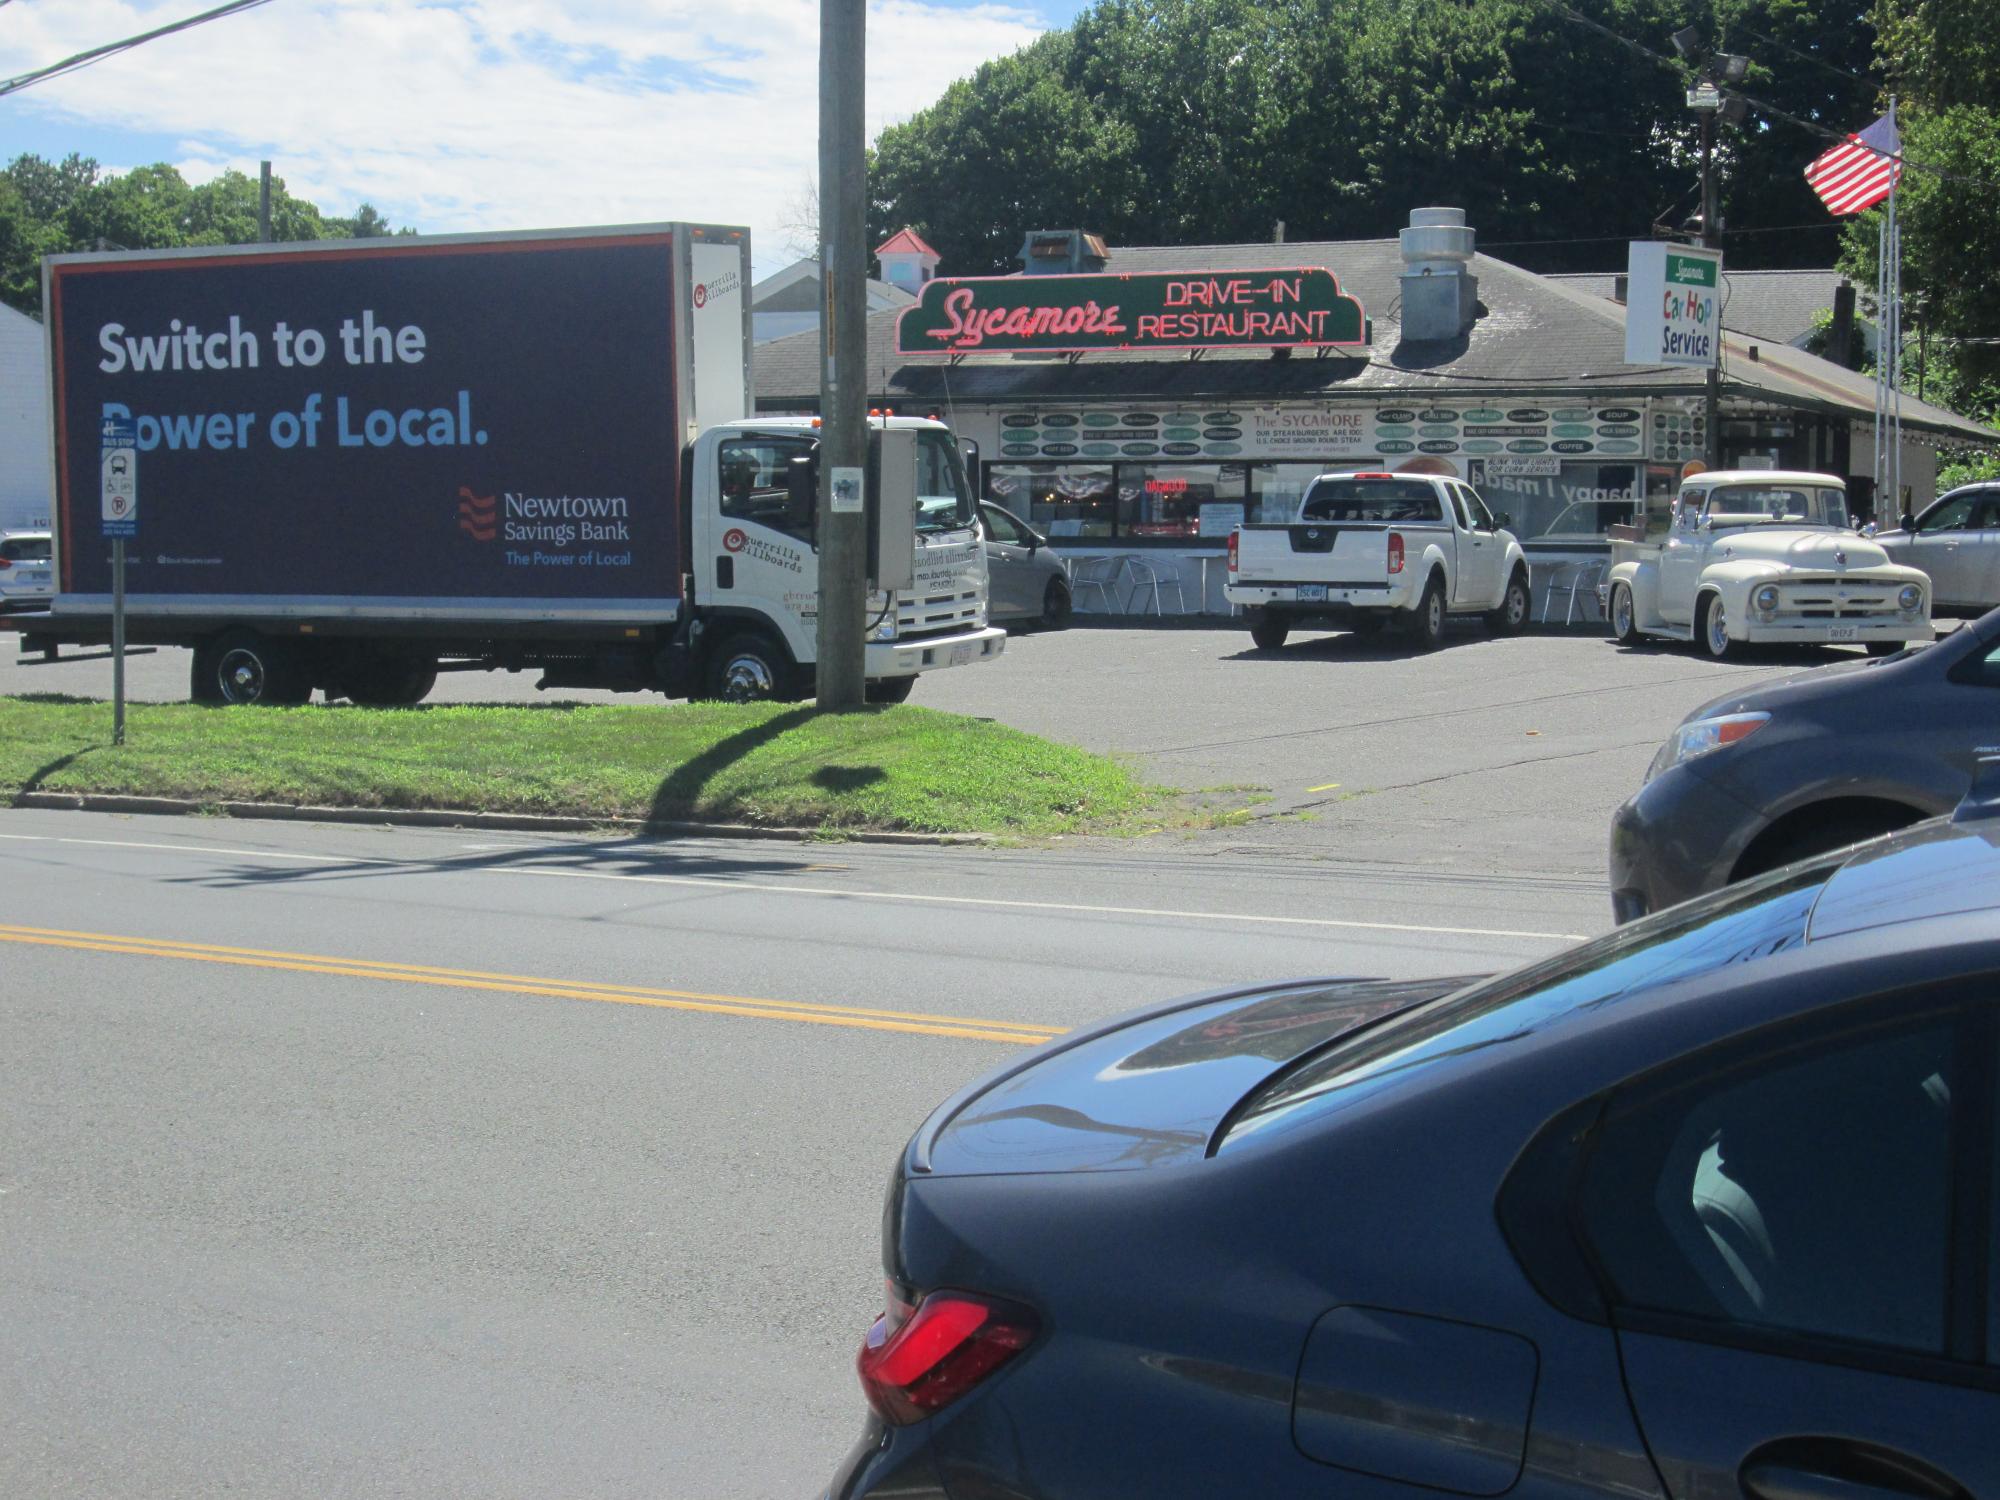 Mobile Billboard truck near Bethel CT, August 2022